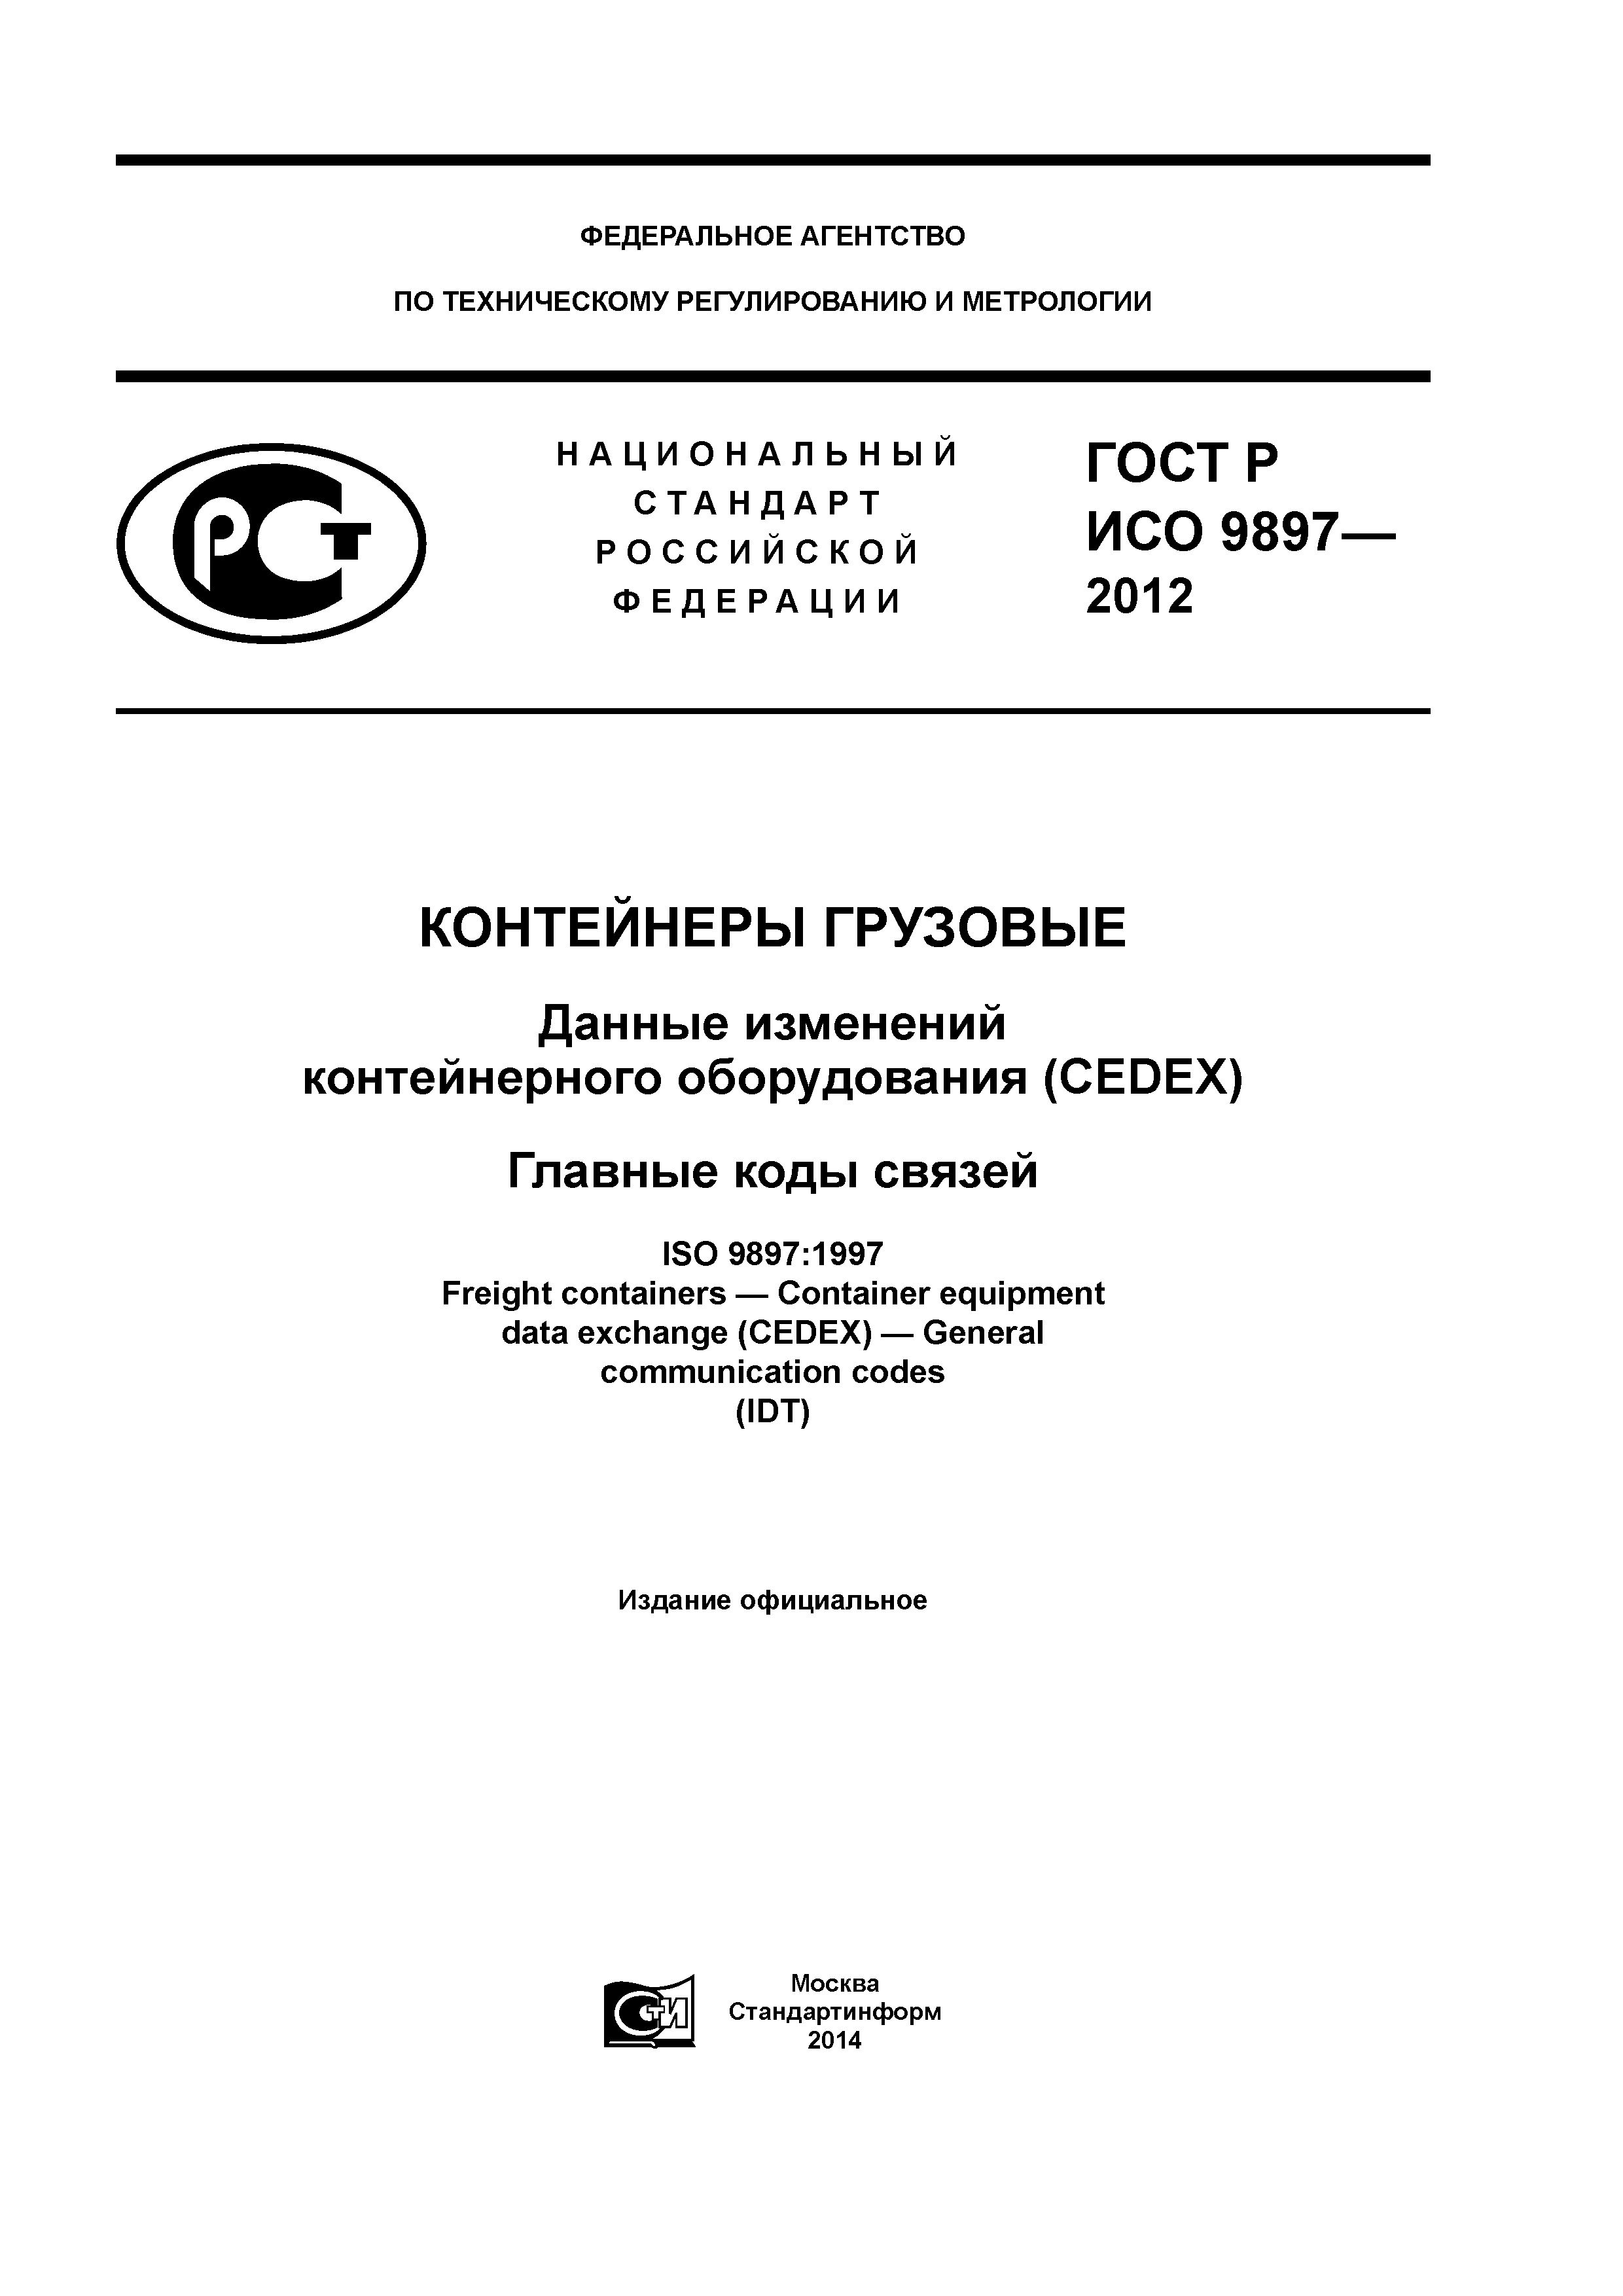 ГОСТ Р ИСО 9897-2012